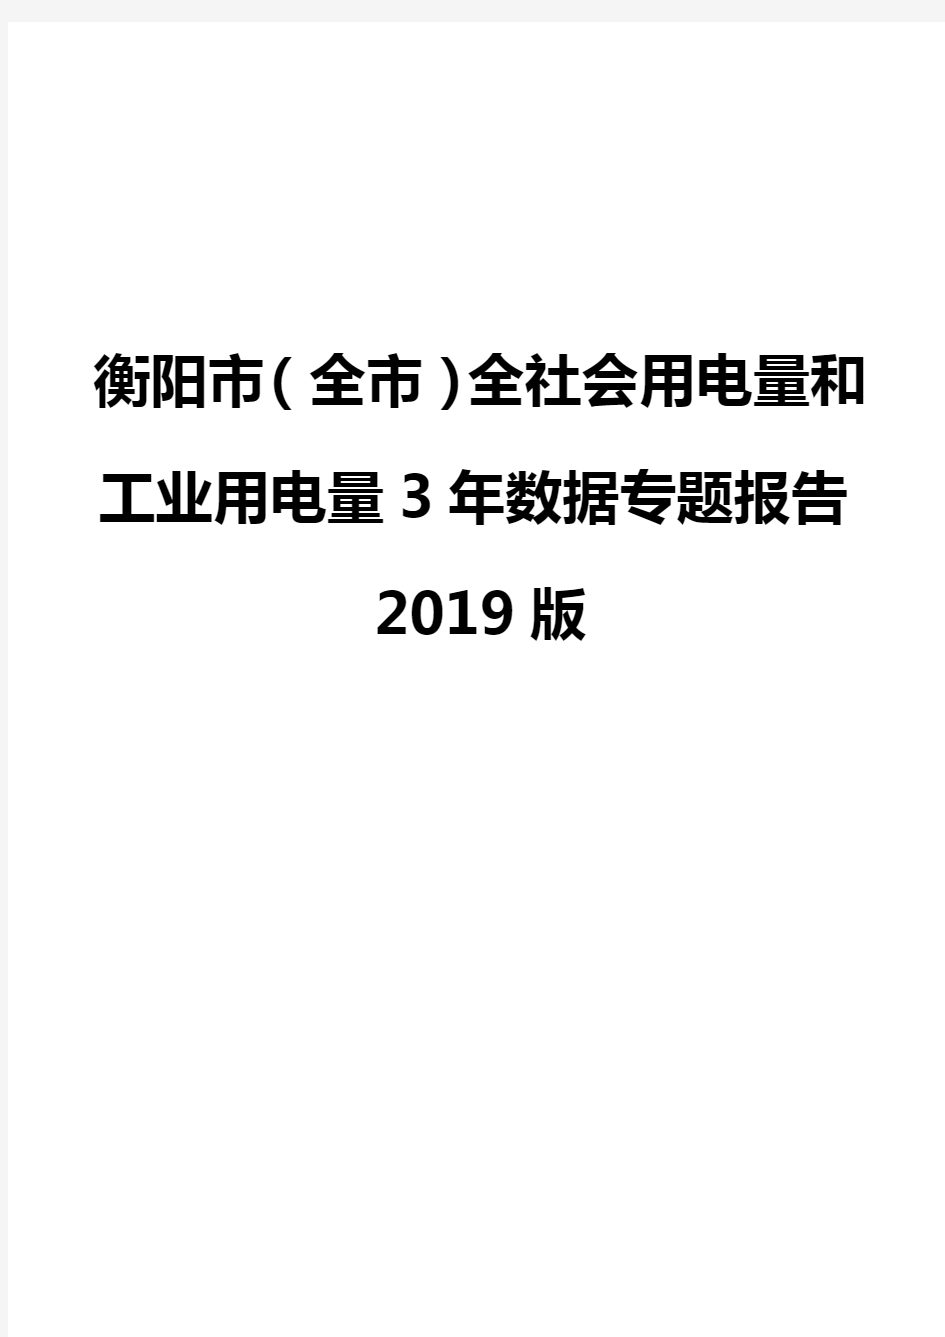 衡阳市(全市)全社会用电量和工业用电量3年数据专题报告2019版